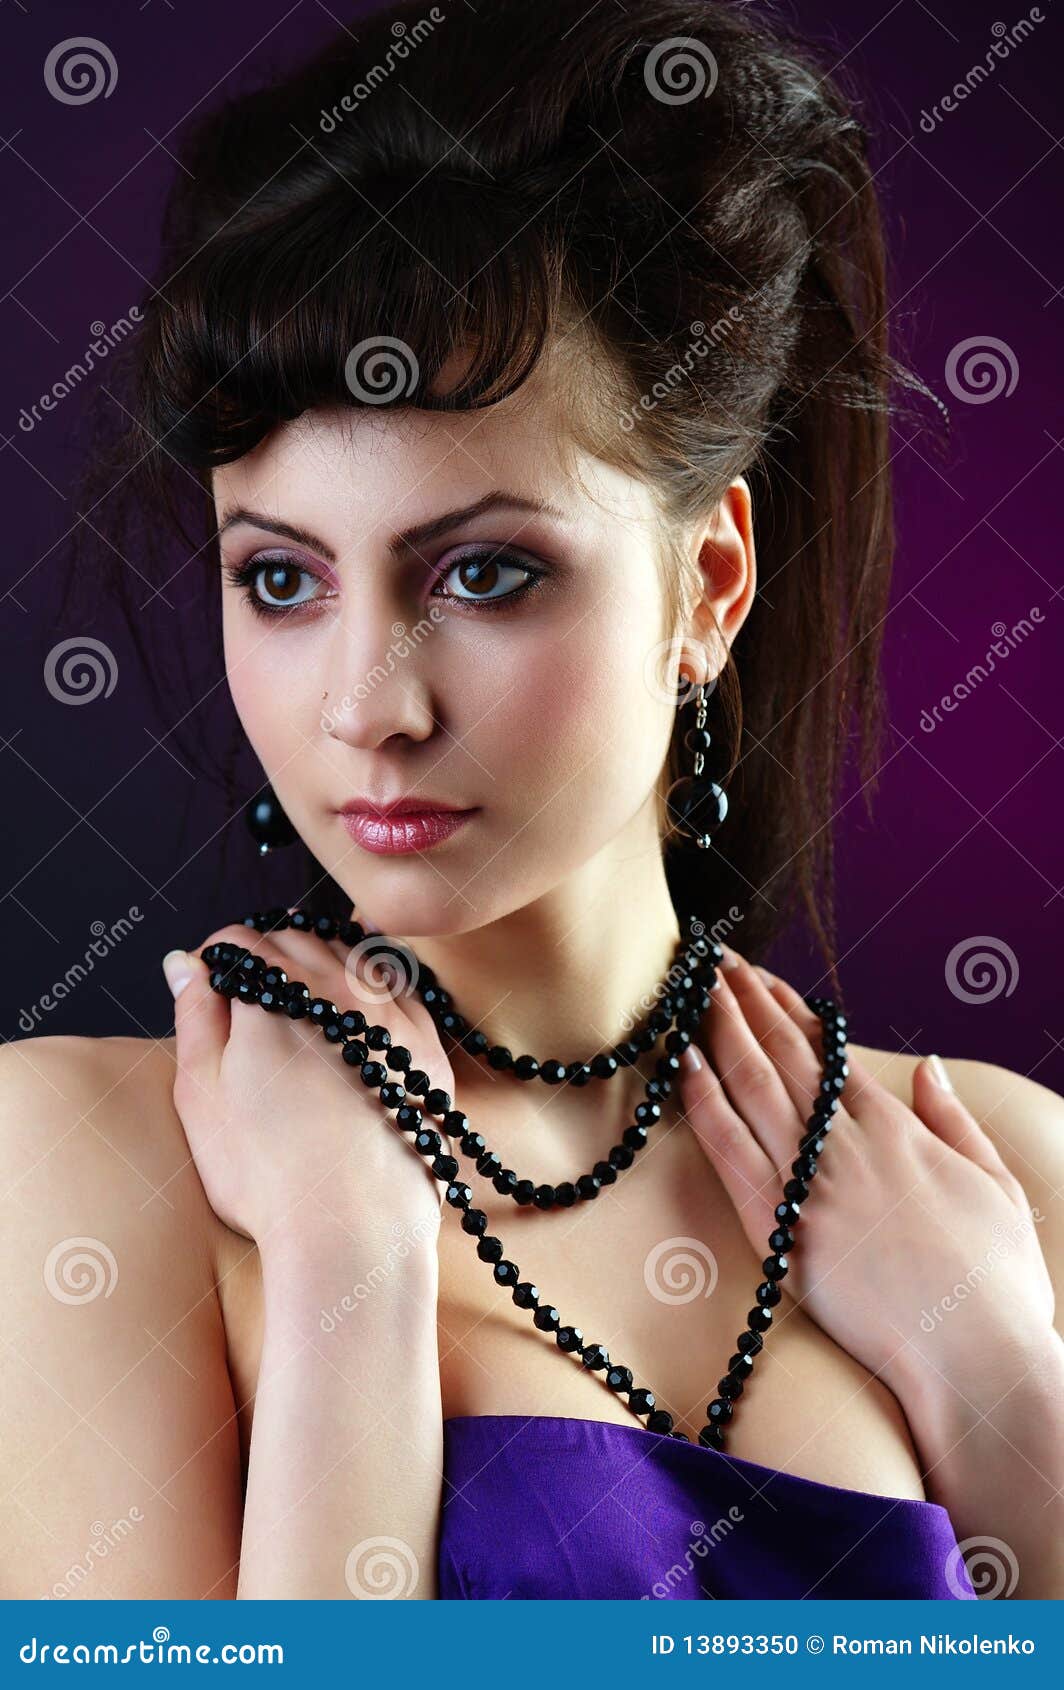 Lady with black beads stock photo. Image of glamour, eyes - 13893350